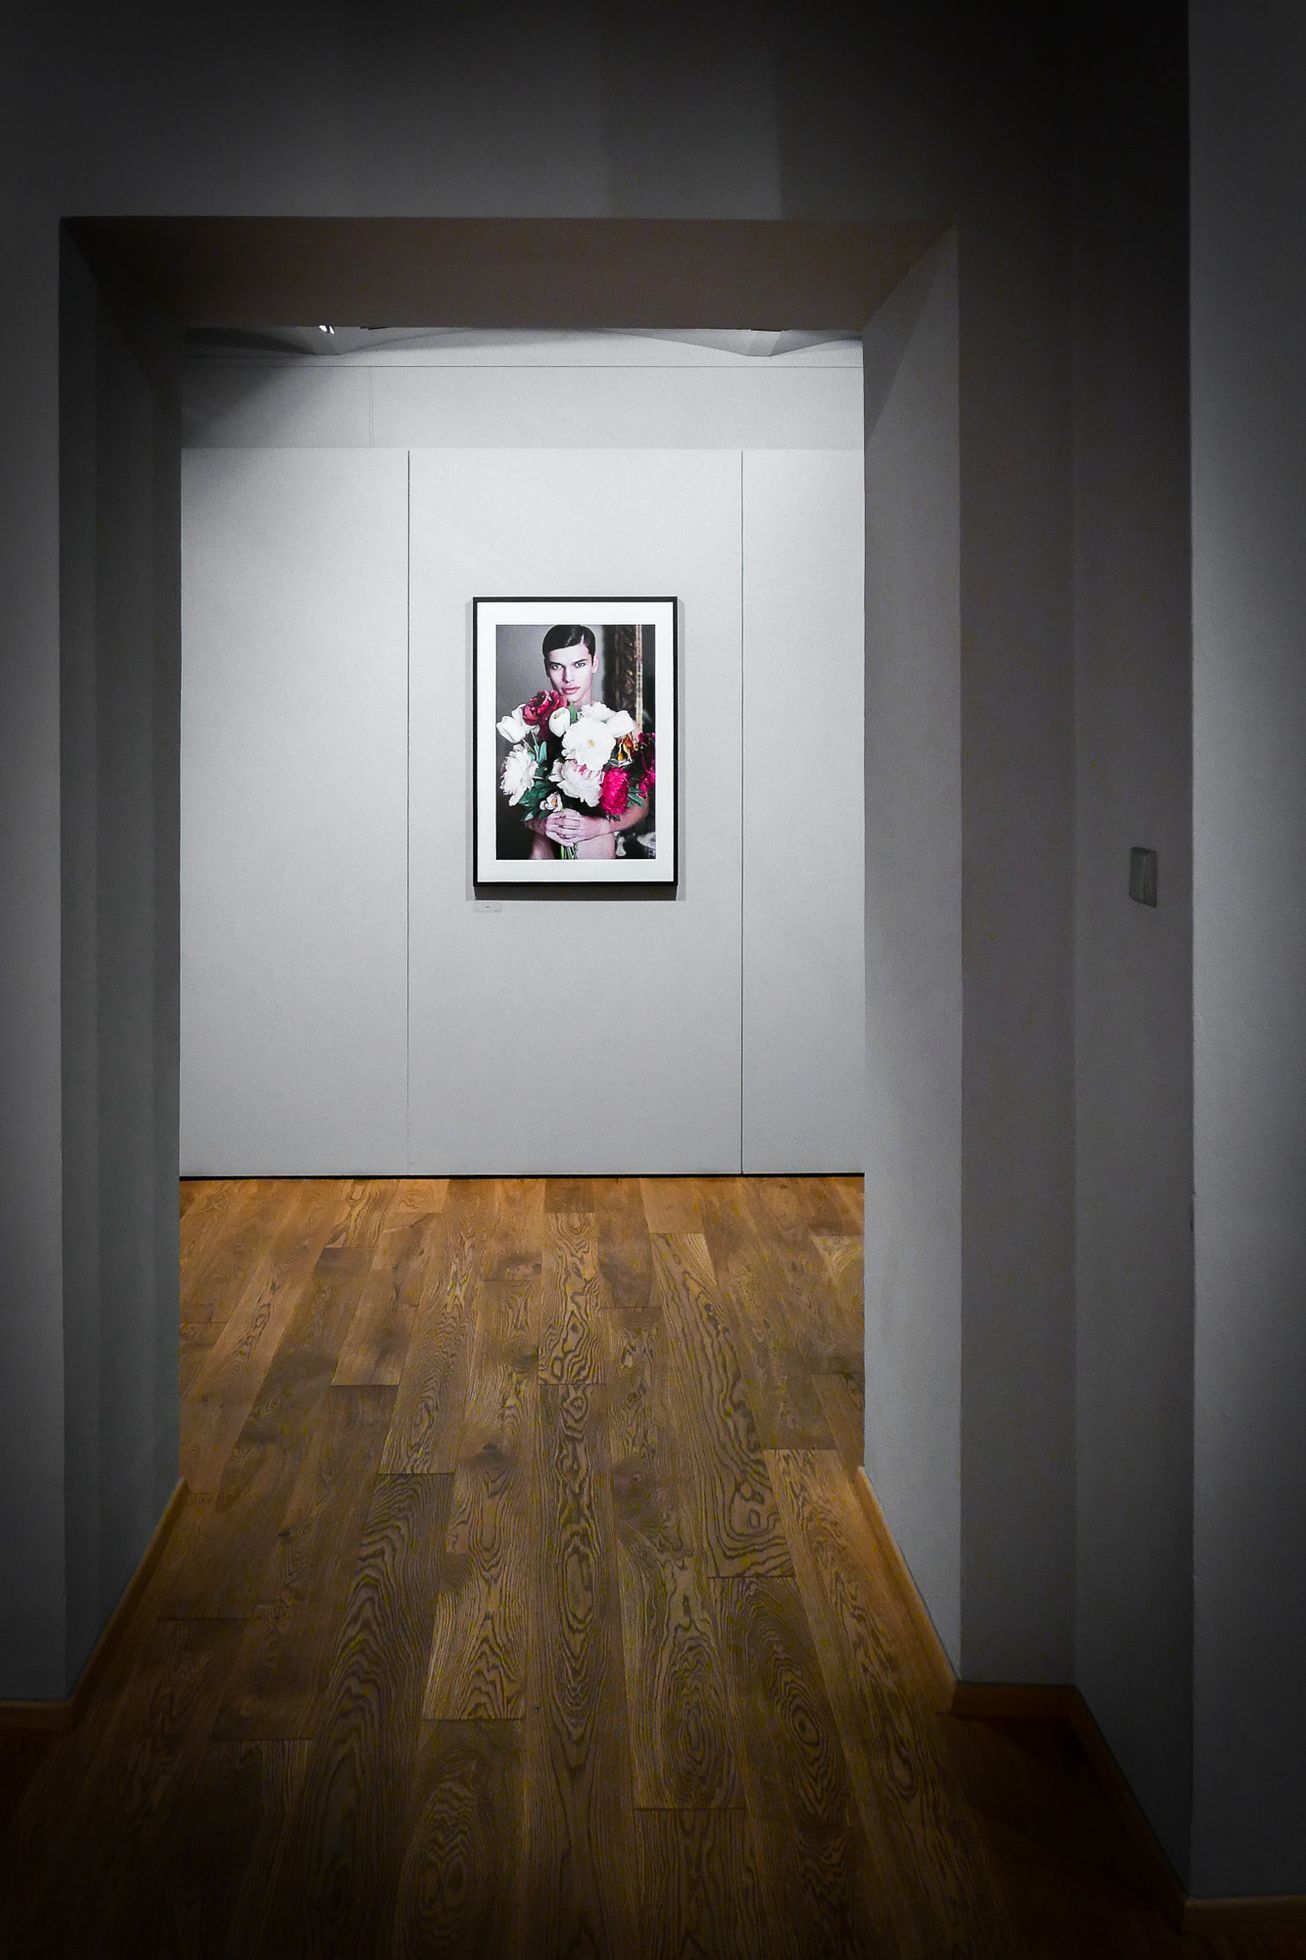 Robert Vano představuje svou výstavu v pražské Leica Gallery